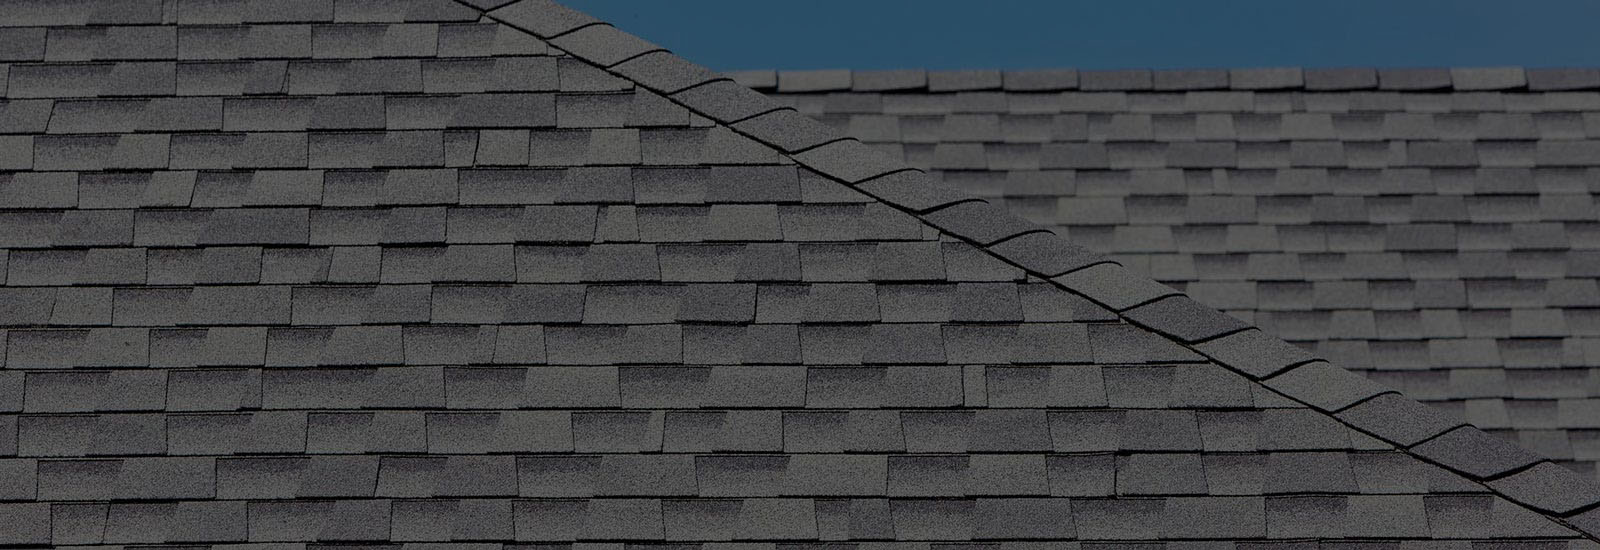 residential roofing repair denton tx